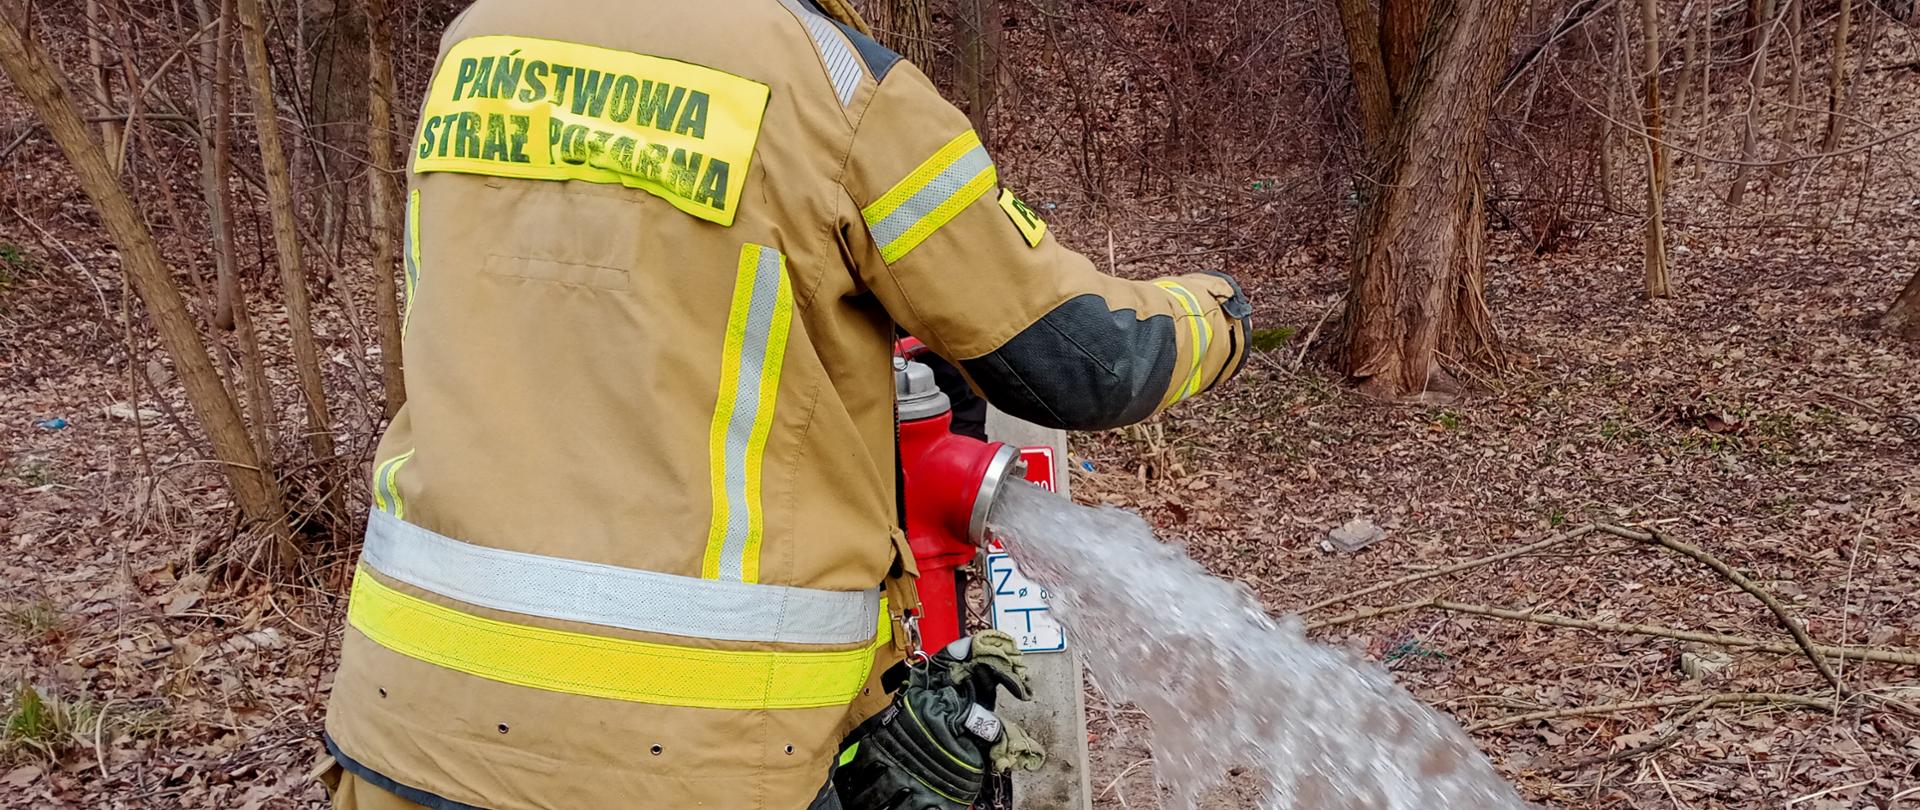 Zdjęcie przedstawia strażaka odkręcającego zawór przy przeciwpożarowym hydrancie zewnętrznym. Z hydrantu wylatuje woda.